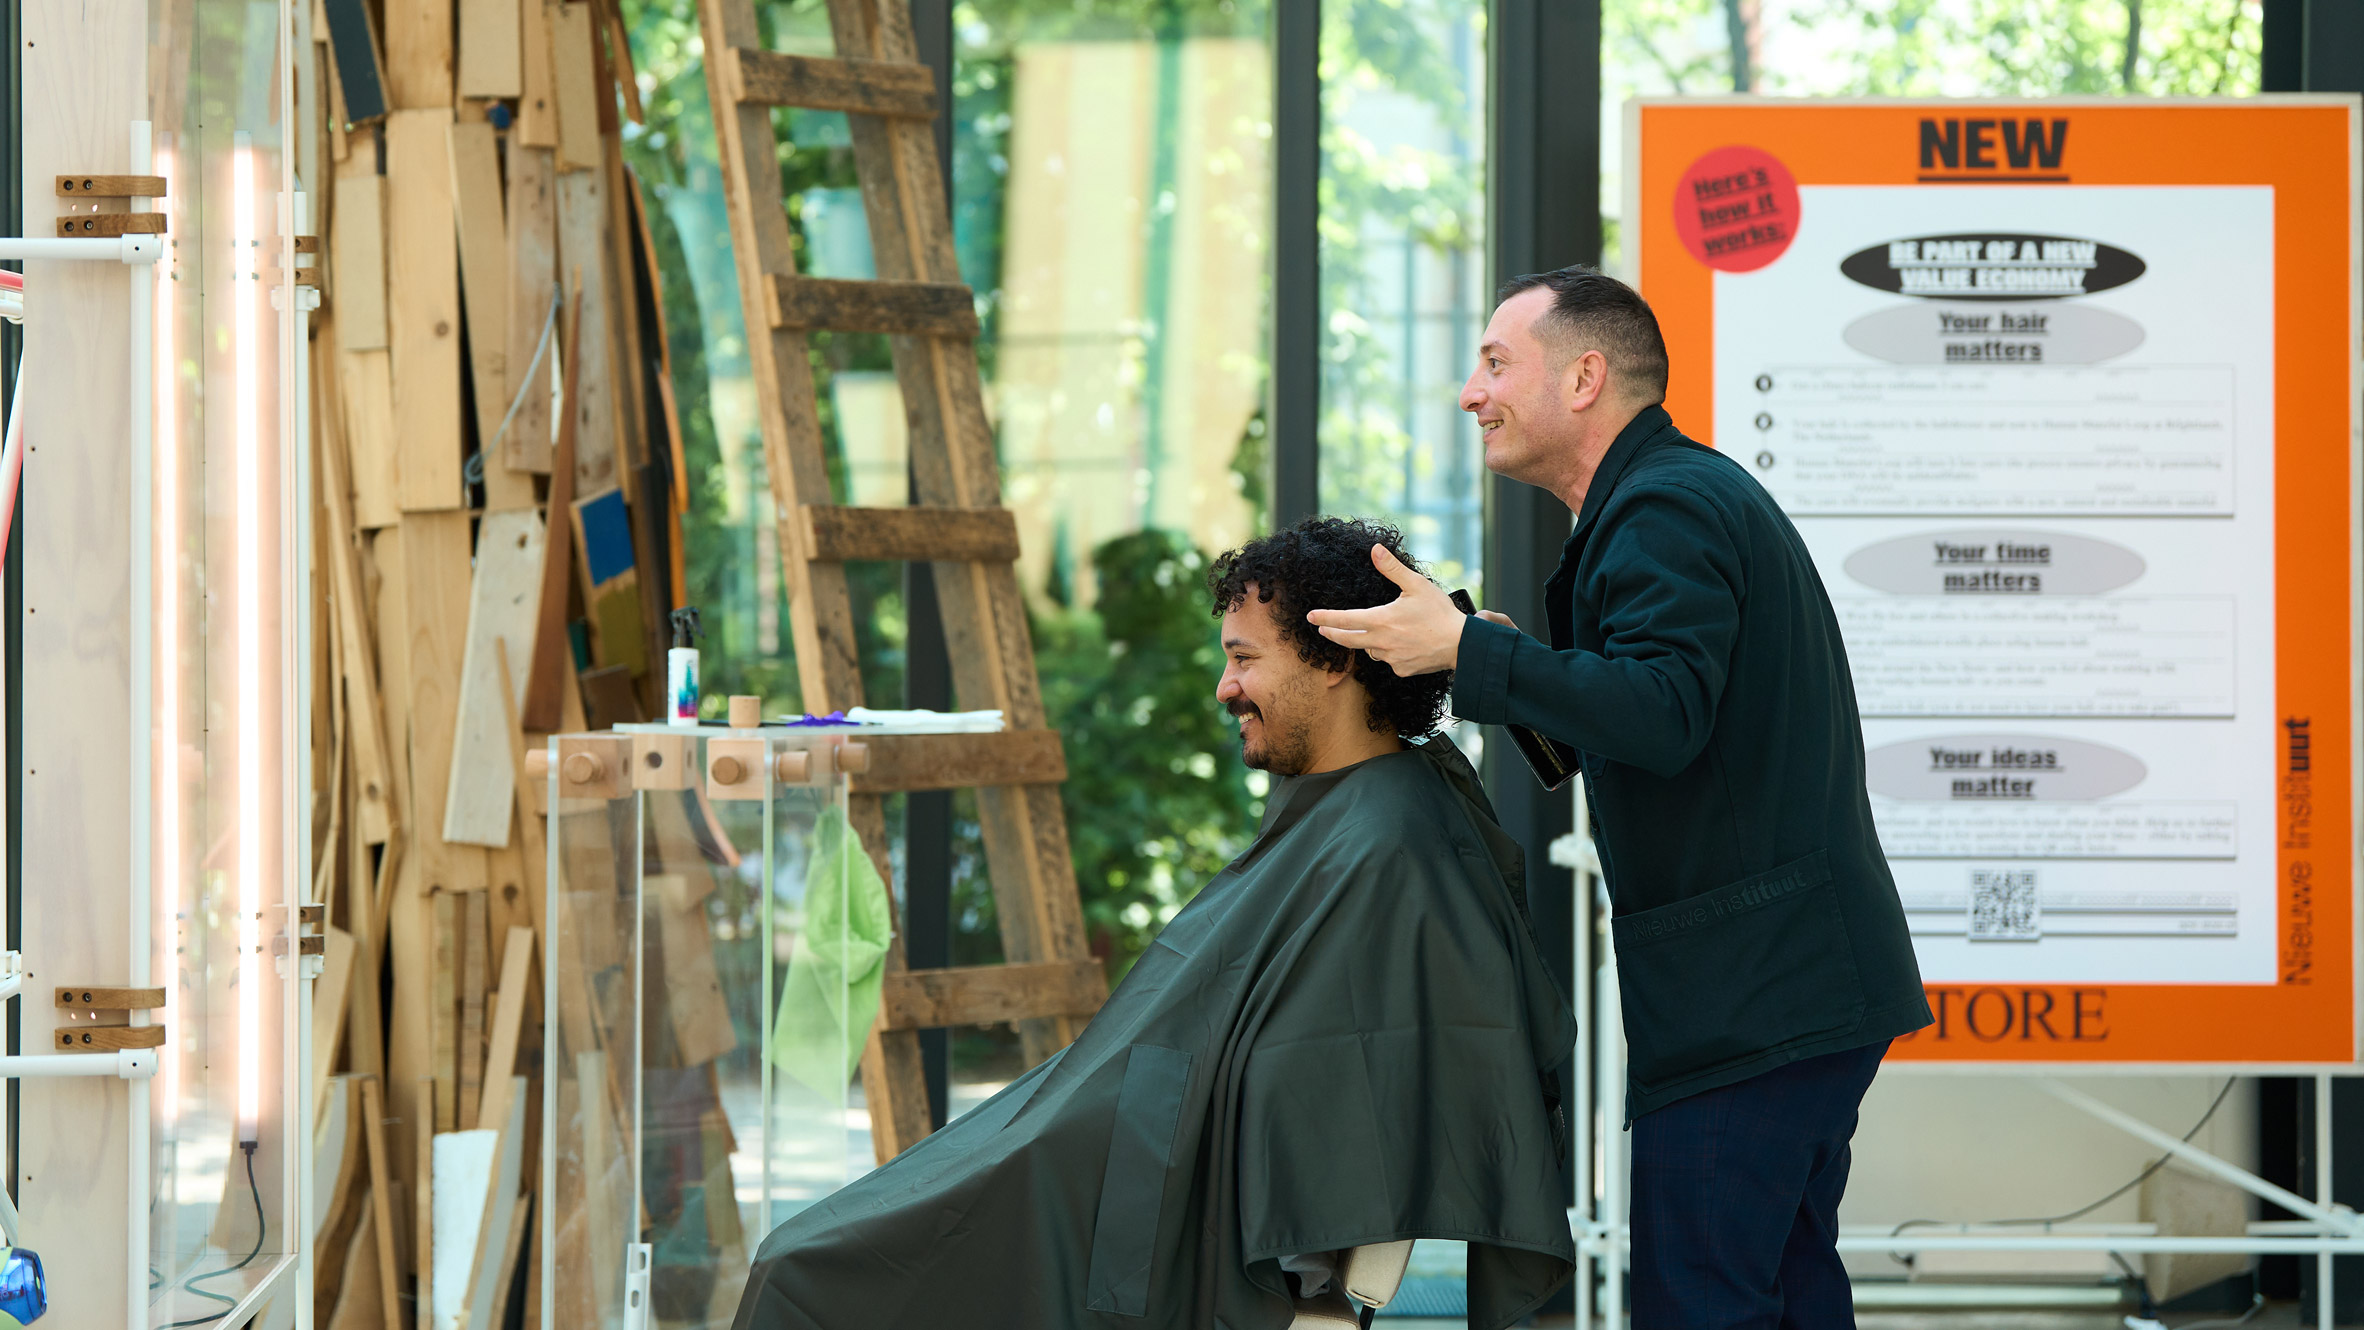 Alberto Fucci gives free haircuts at New Store 2.0 in Milan